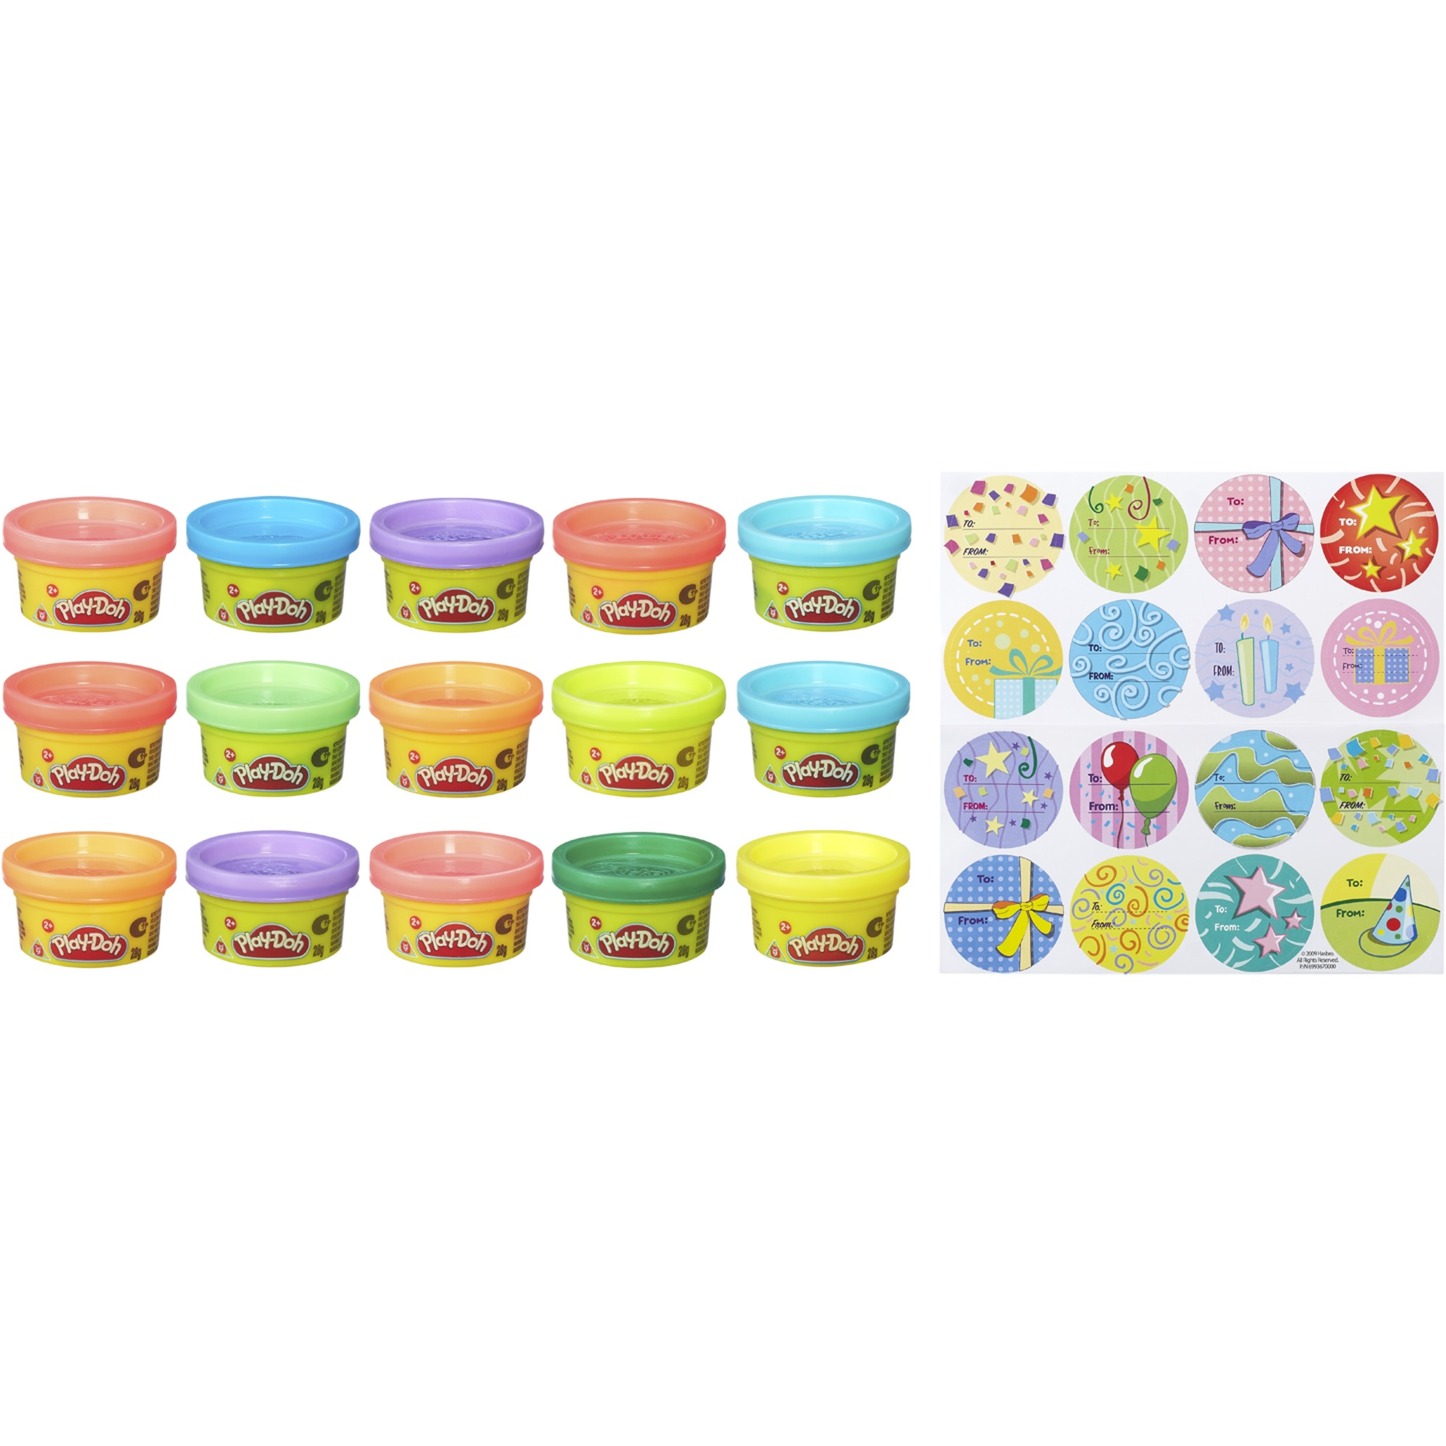 Image of Alternate - Play-Doh Partyknete mit Stickern, Kneten online einkaufen bei Alternate